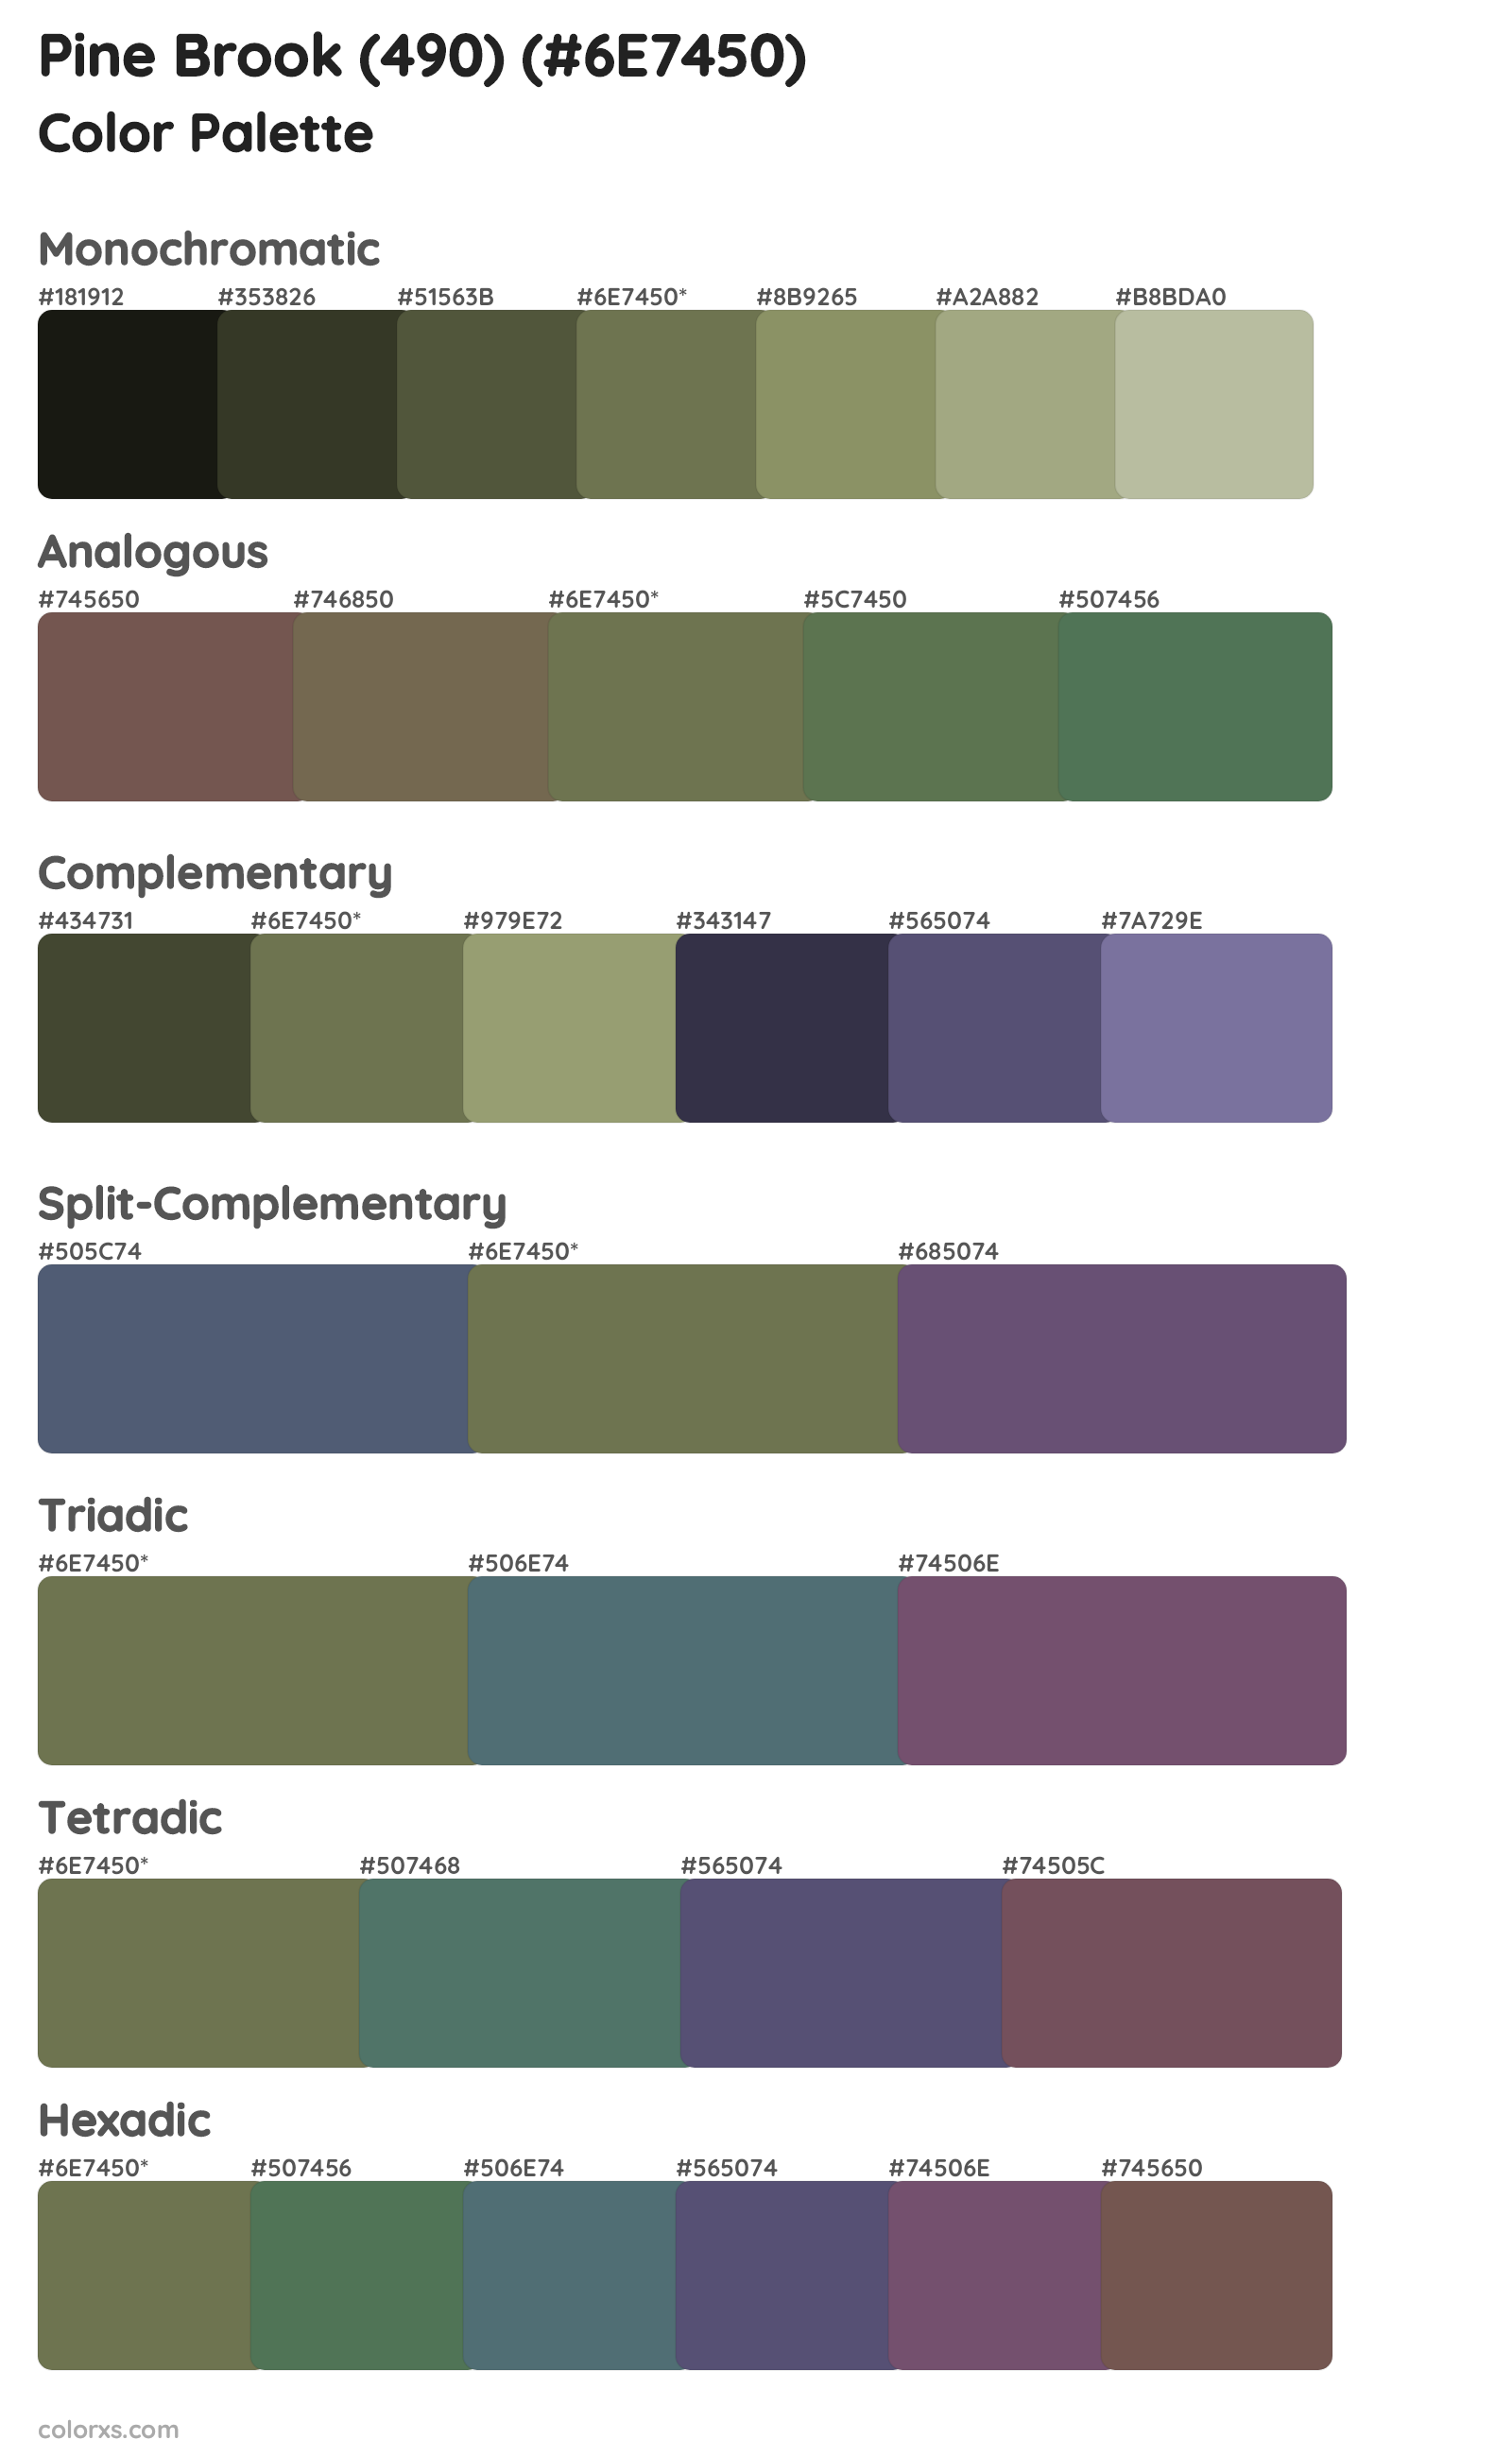 Pine Brook (490) Color Scheme Palettes